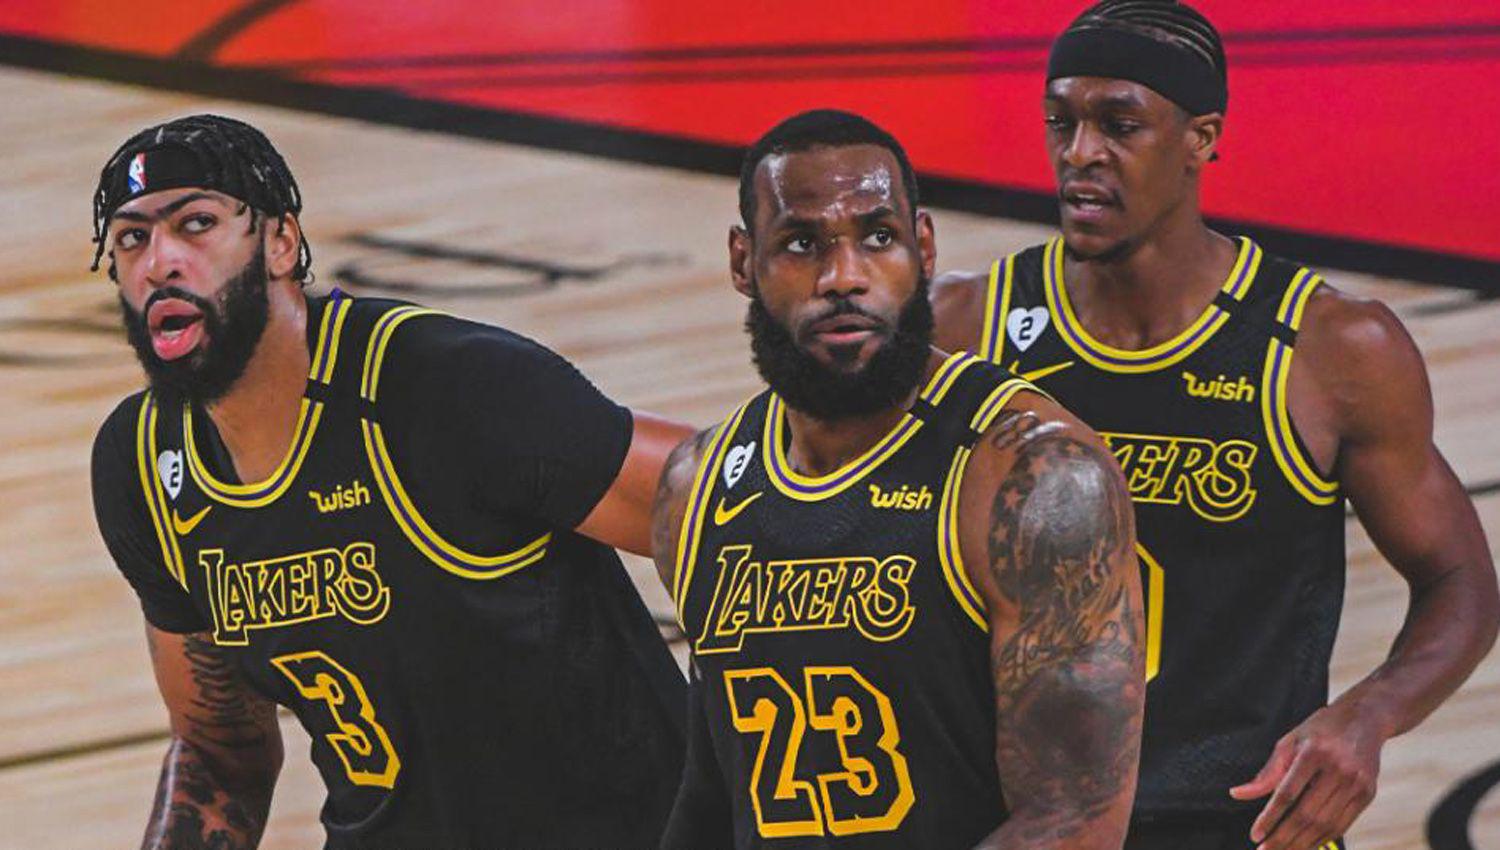 Los Aacutengeles Lakers va por la consagracioacuten